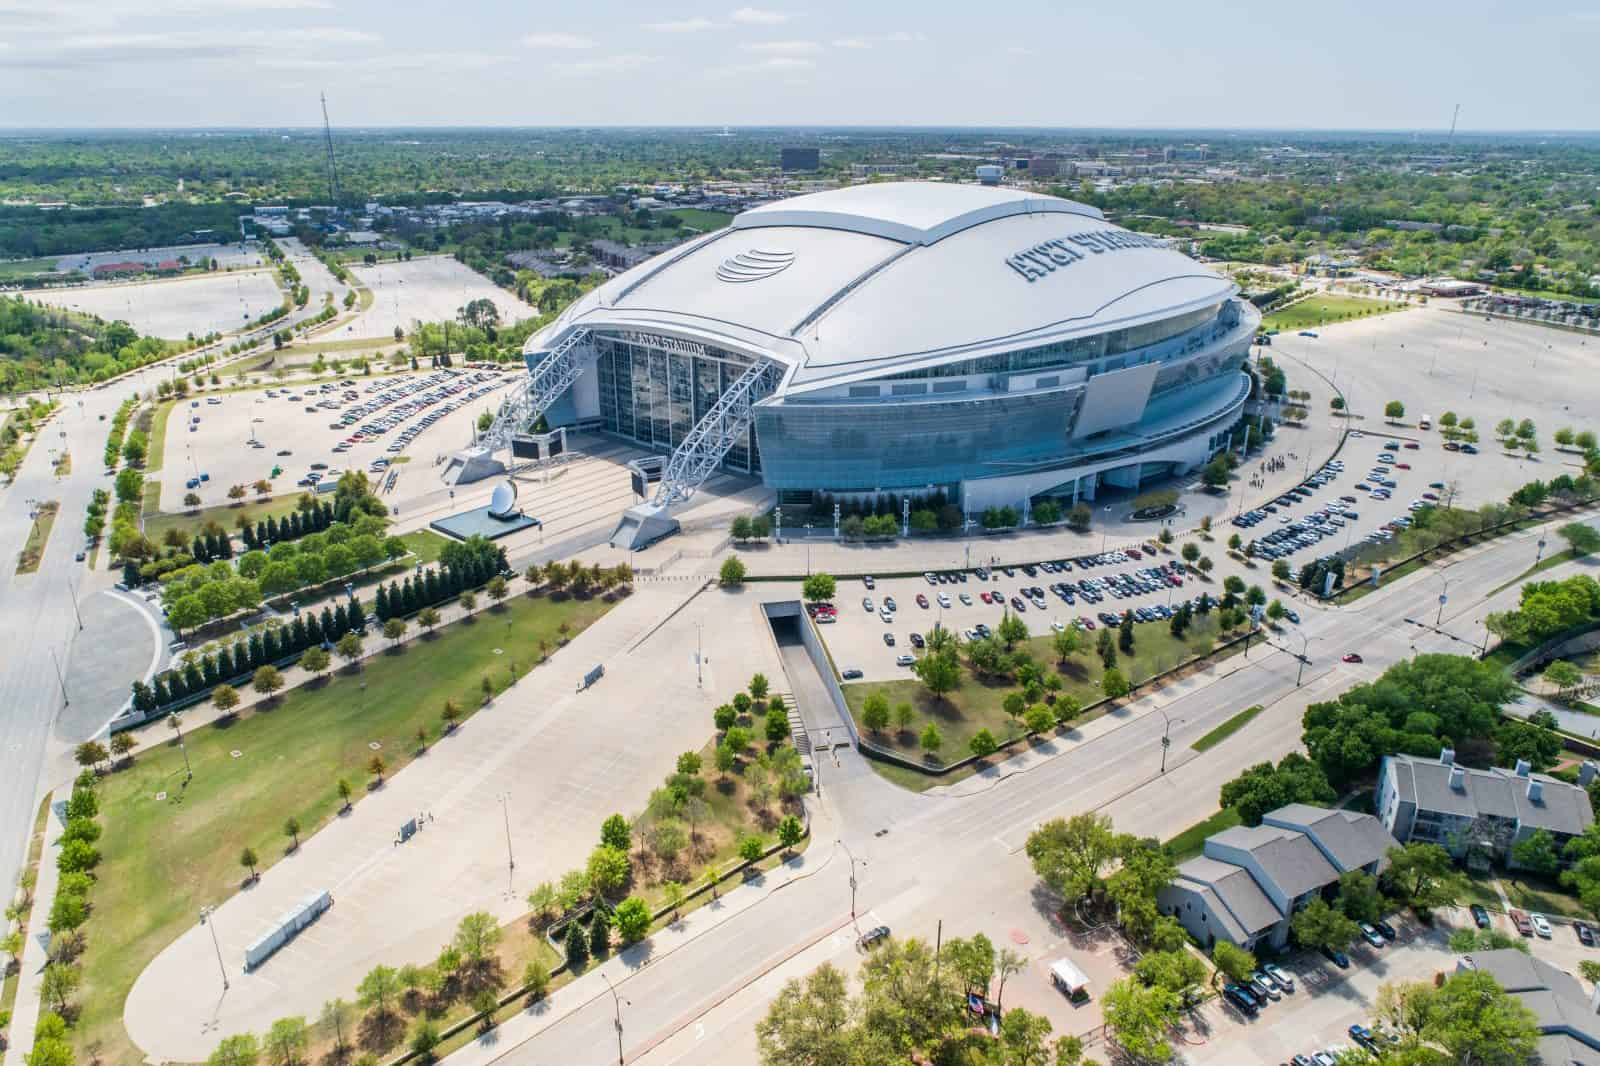 Drone Images of Dallas Cowboys Stadium - AT&T Stadium